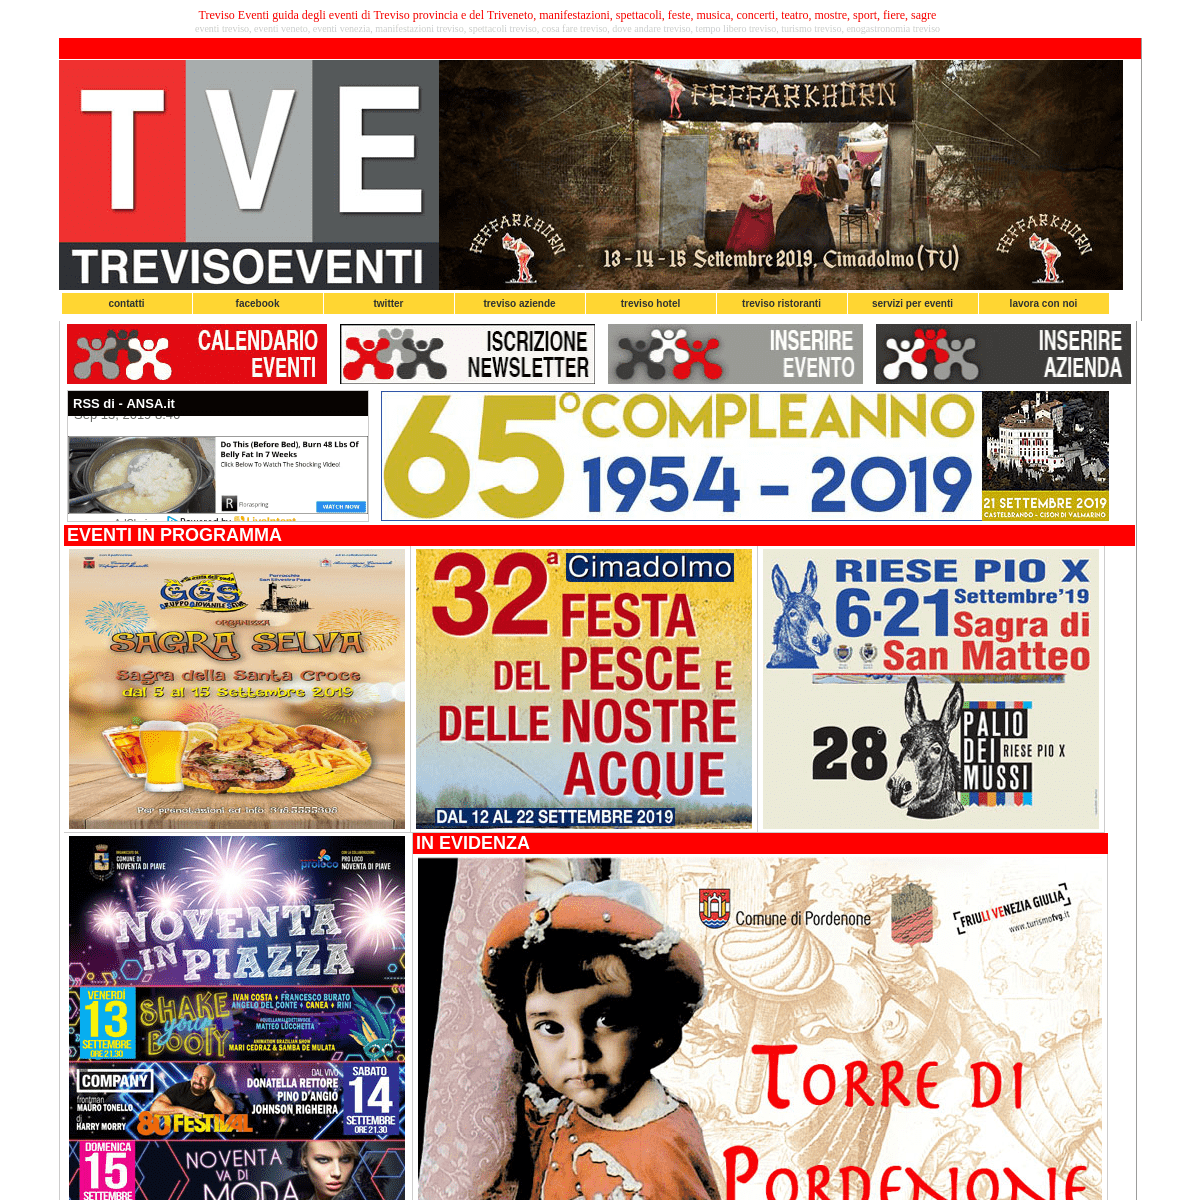 TREVISO EVENTI i migliori eventi e calendario 2019 degli eventi a Treviso